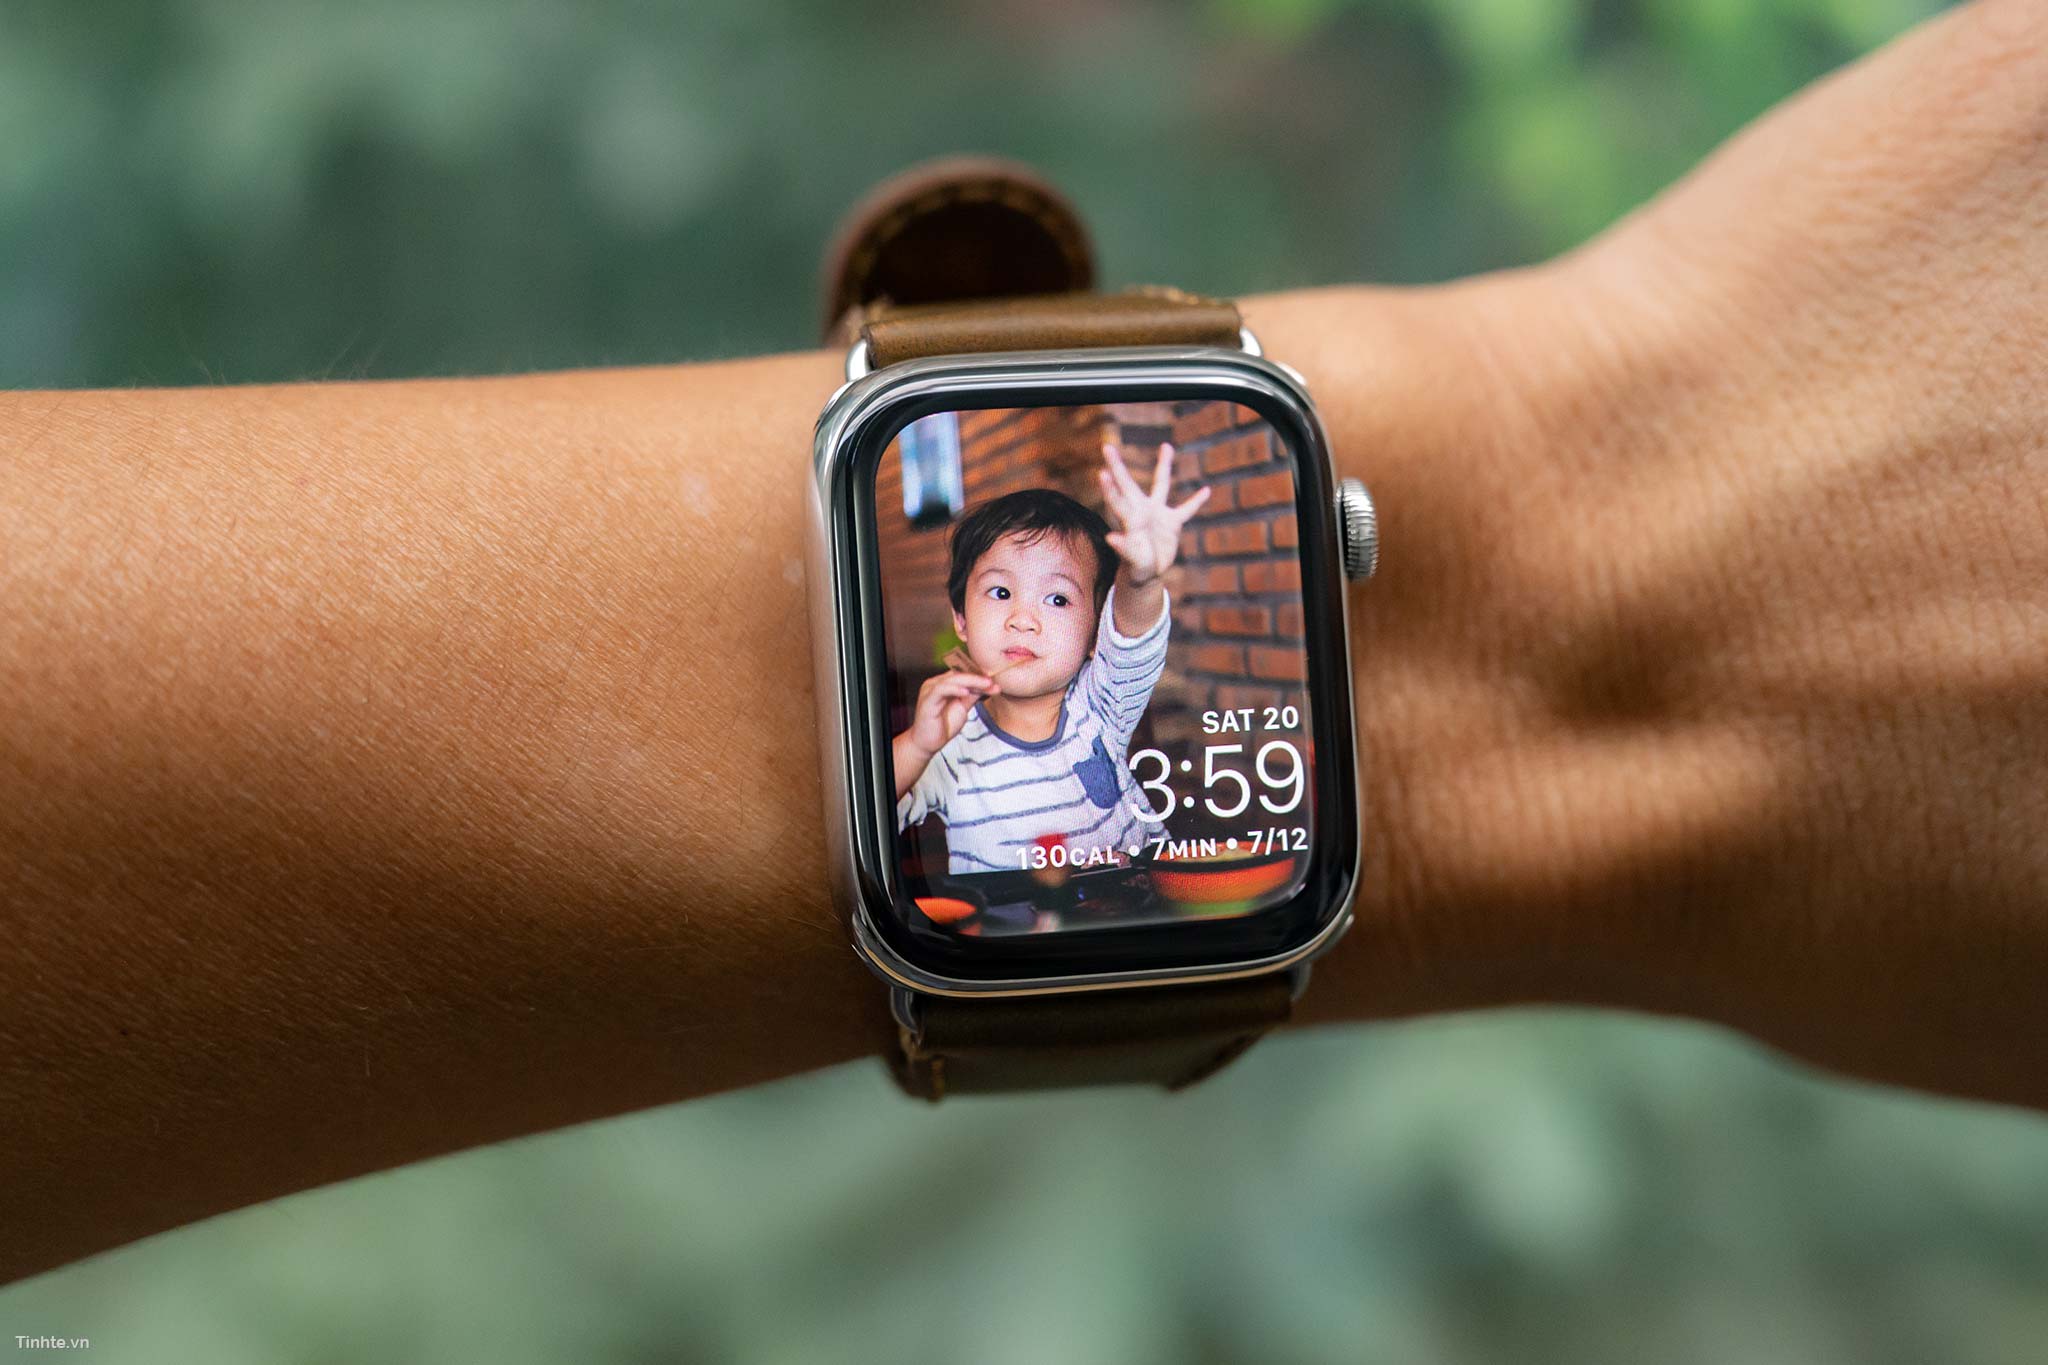 Đồng hồ thông minh Seri 5: Đồng hồ thông minh Seri 5 của Apple là sản phẩm đáng sở hữu nhất hiện nay. Với nhiều tính năng thông minh và thiết kế sang trọng, Seri 5 sẽ là điểm nhấn hoàn hảo cho phong cách của bạn.